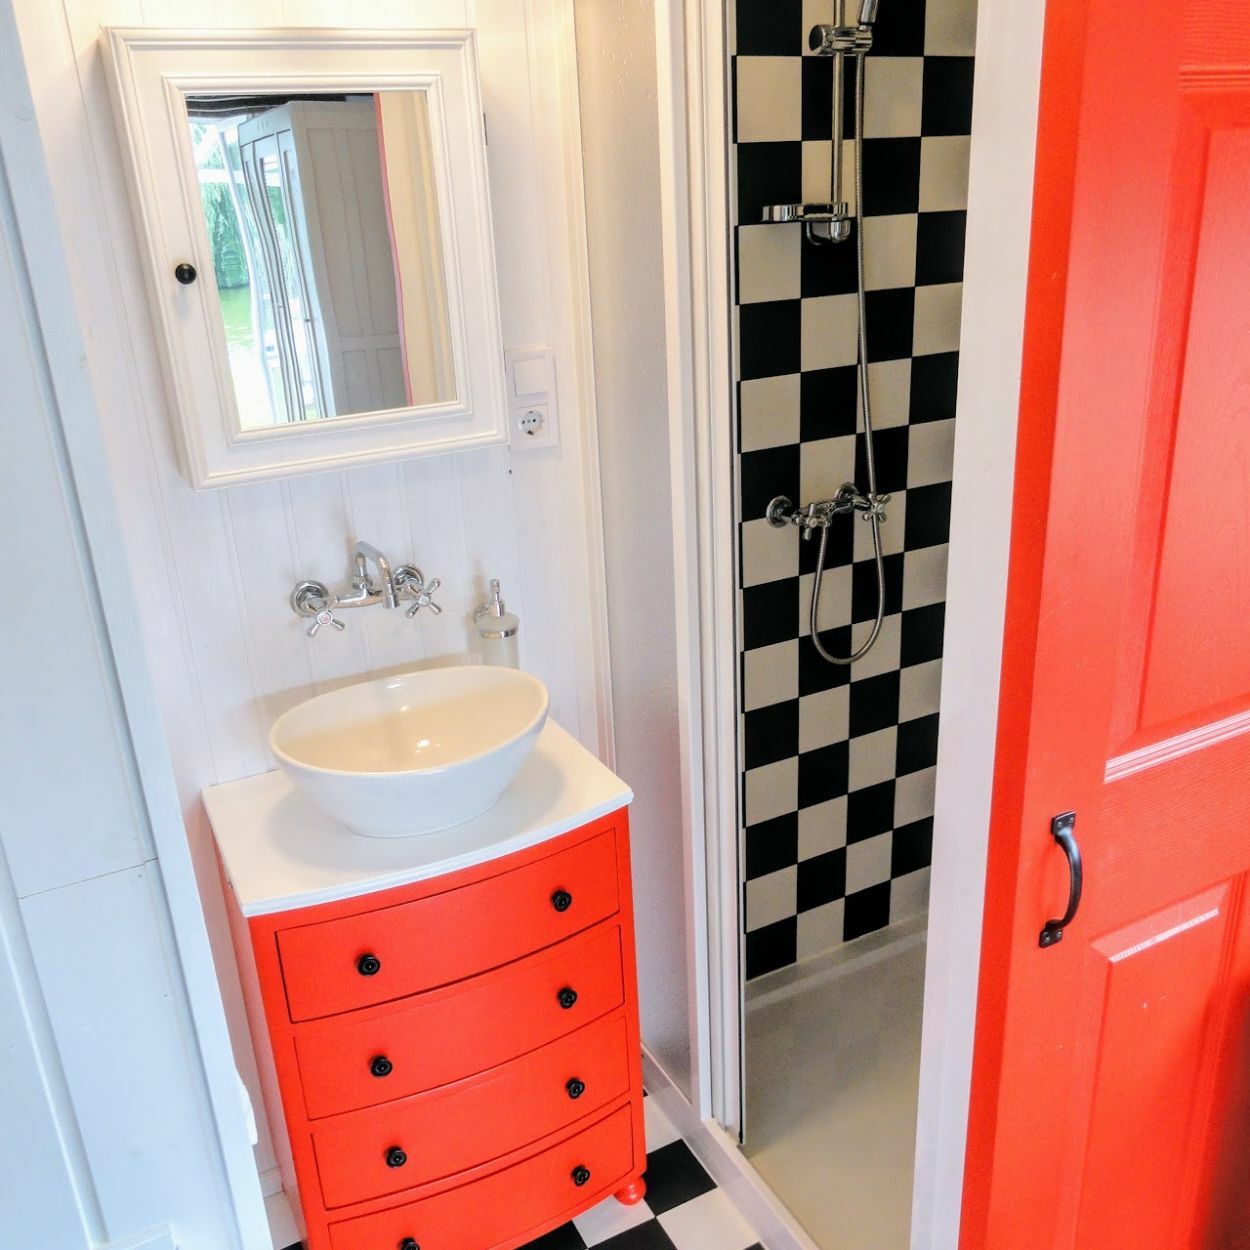 Élénkpiros fürdőszobai szekrény és fekete-fehér kockás burkolat a zuhanyzóban